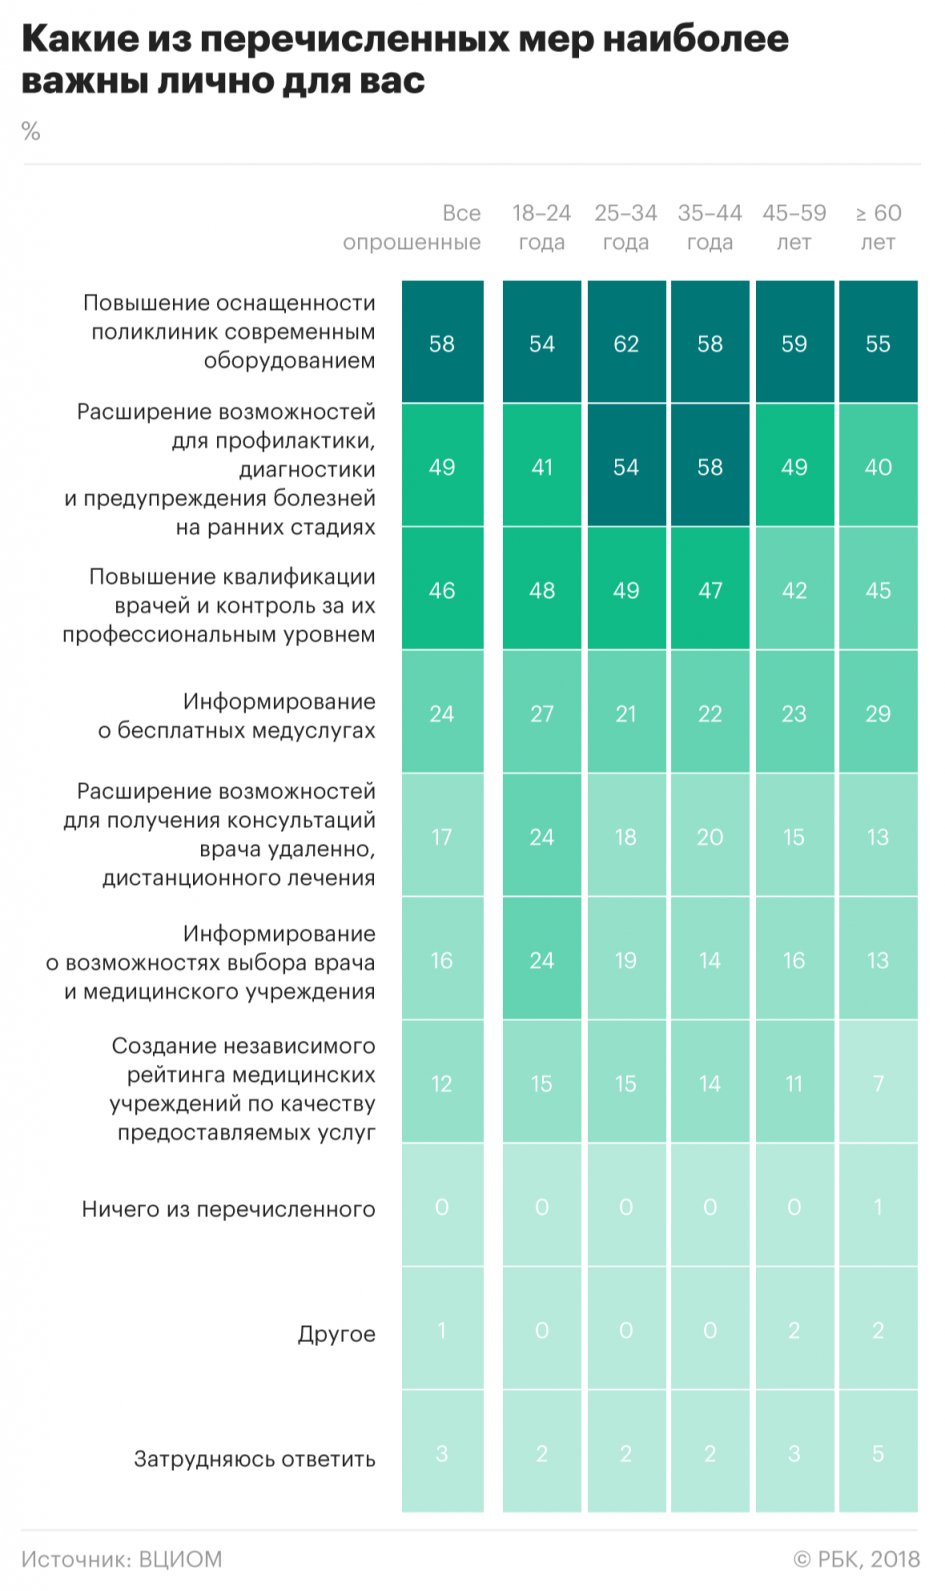 Около 40% россиян хотят, чтобы оценка качества работы врача напрямую влияло на его зарплату, а также была введена персональная ответственность докторов. Такие результаты дал последний опрос ВЦИОМ по теме медицины, передаёт РБК. Телефонный опрос прошли 1,6 тысячи россиян 17 октября.